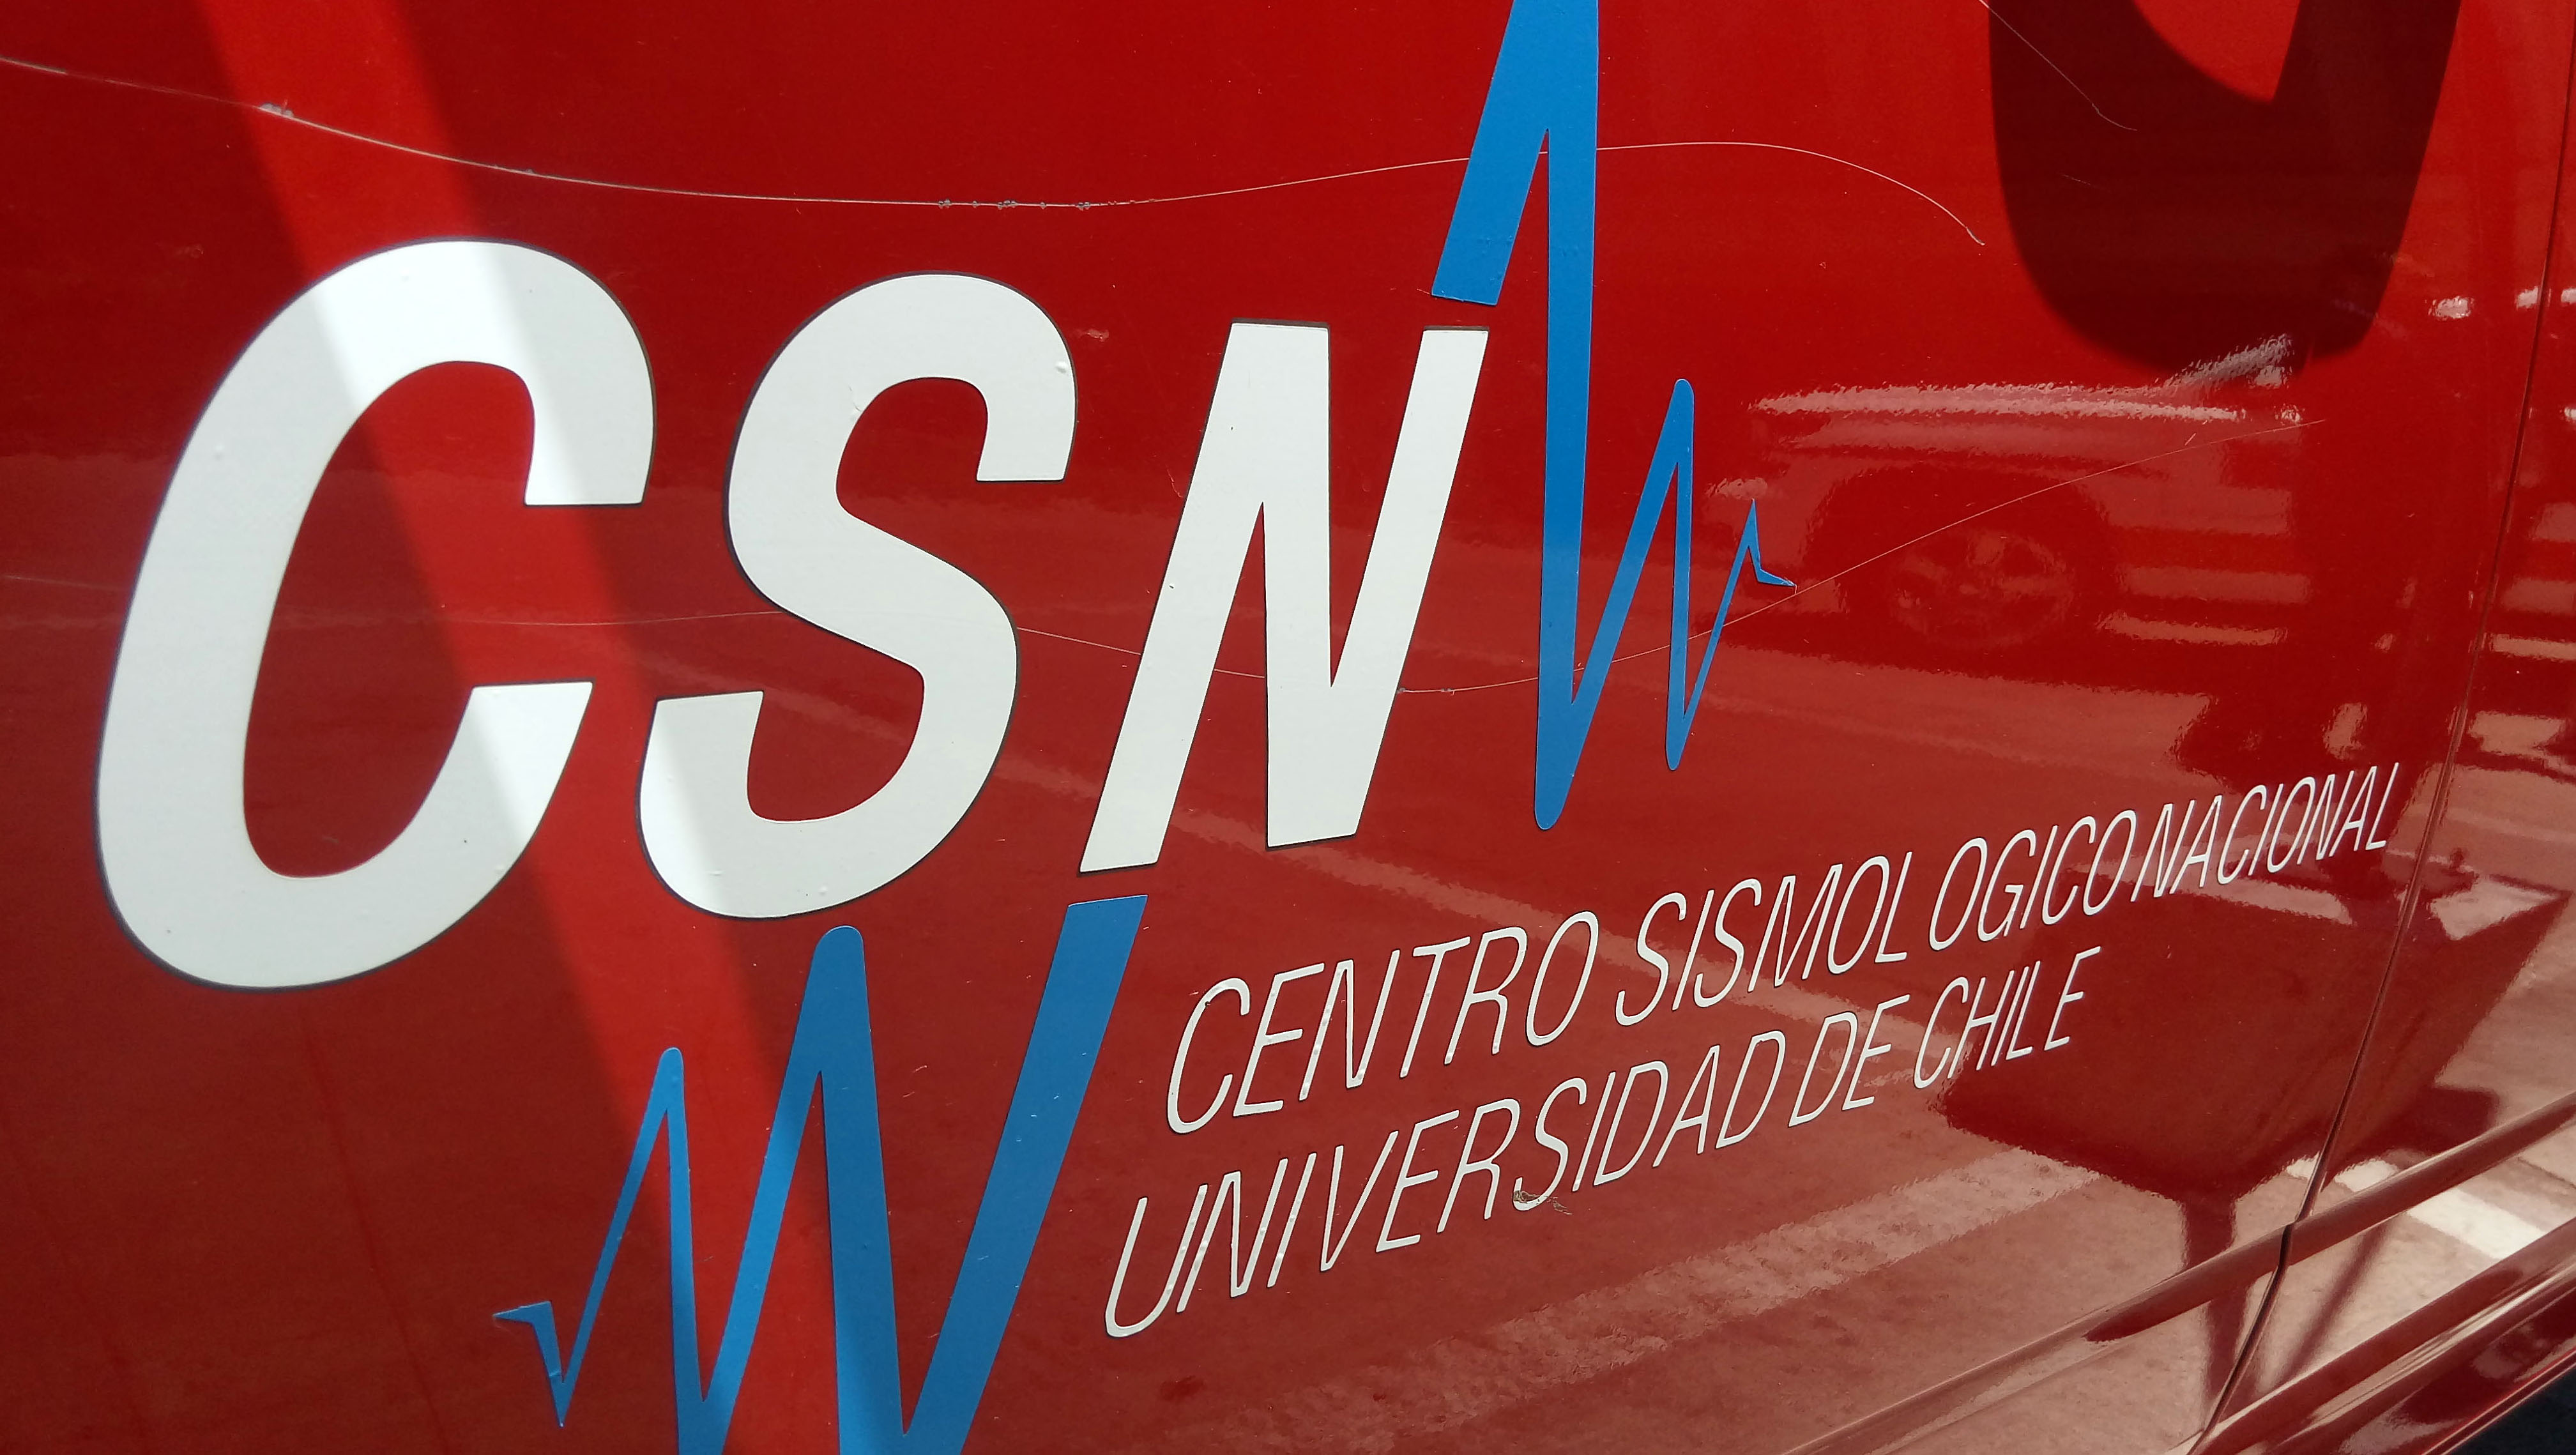 Imagen del logo del Centro Sismológico Nacional.